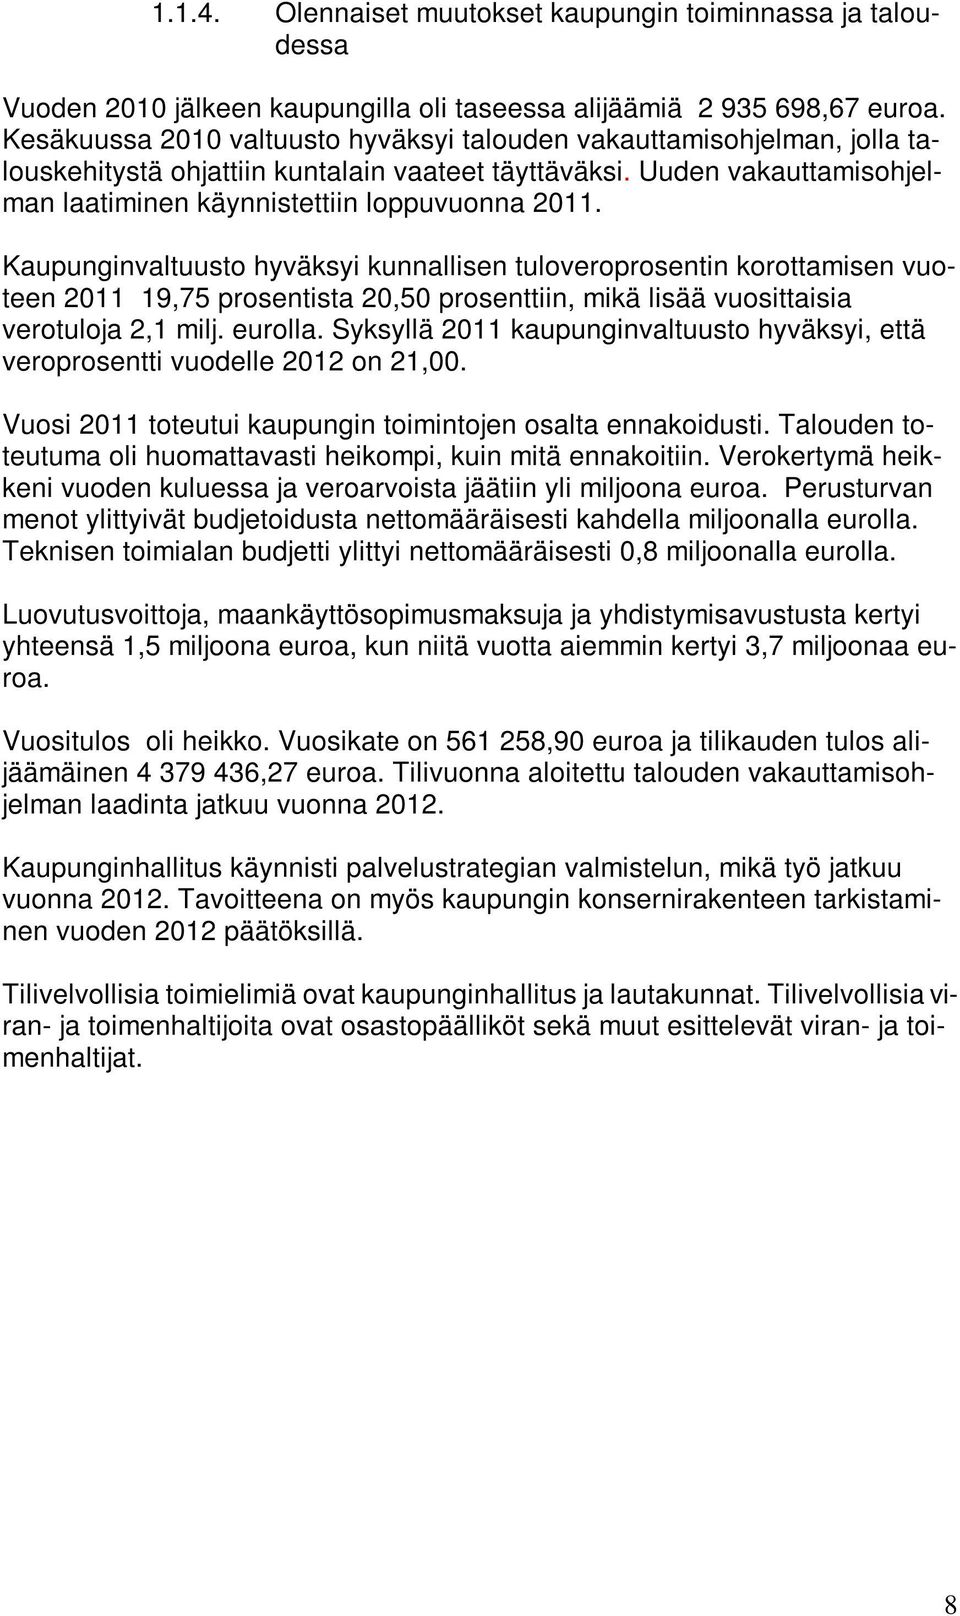 Kaupunginvaltuusto hyväksyi kunnallisen tuloveroprosentin korottamisen vuoteen 2011 19,75 prosentista 20,50 prosenttiin, mikä lisää vuosittaisia verotuloja 2,1 milj. eurolla.